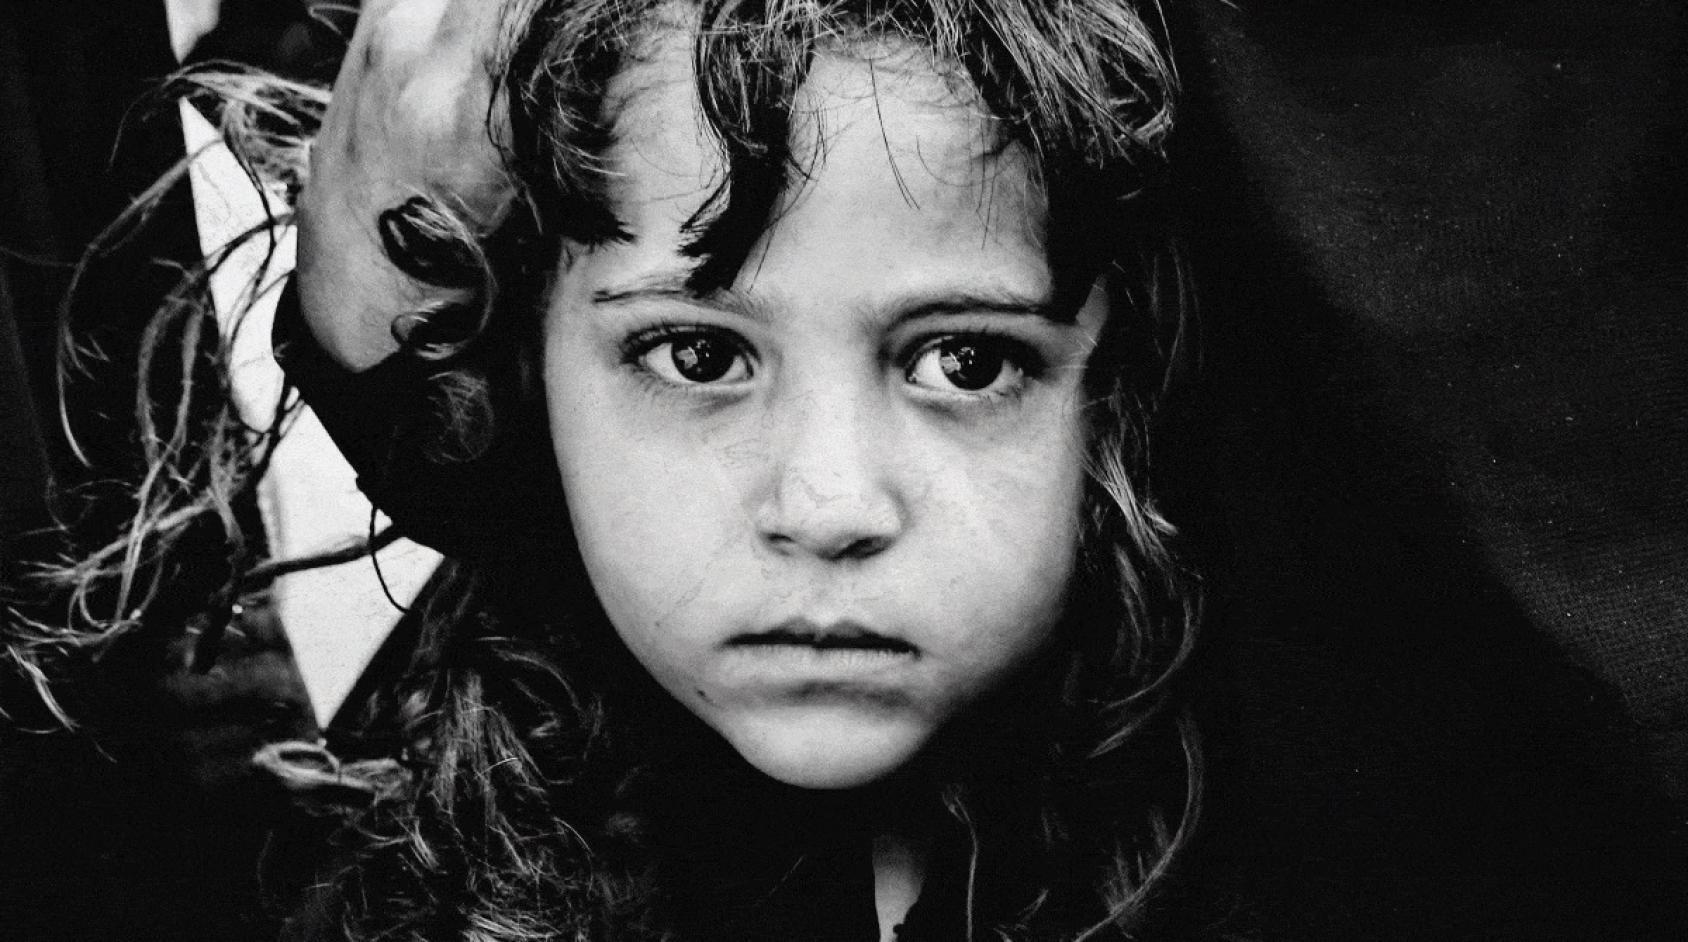 Gros plan en noir et blanc d'une petite fille yéménite.